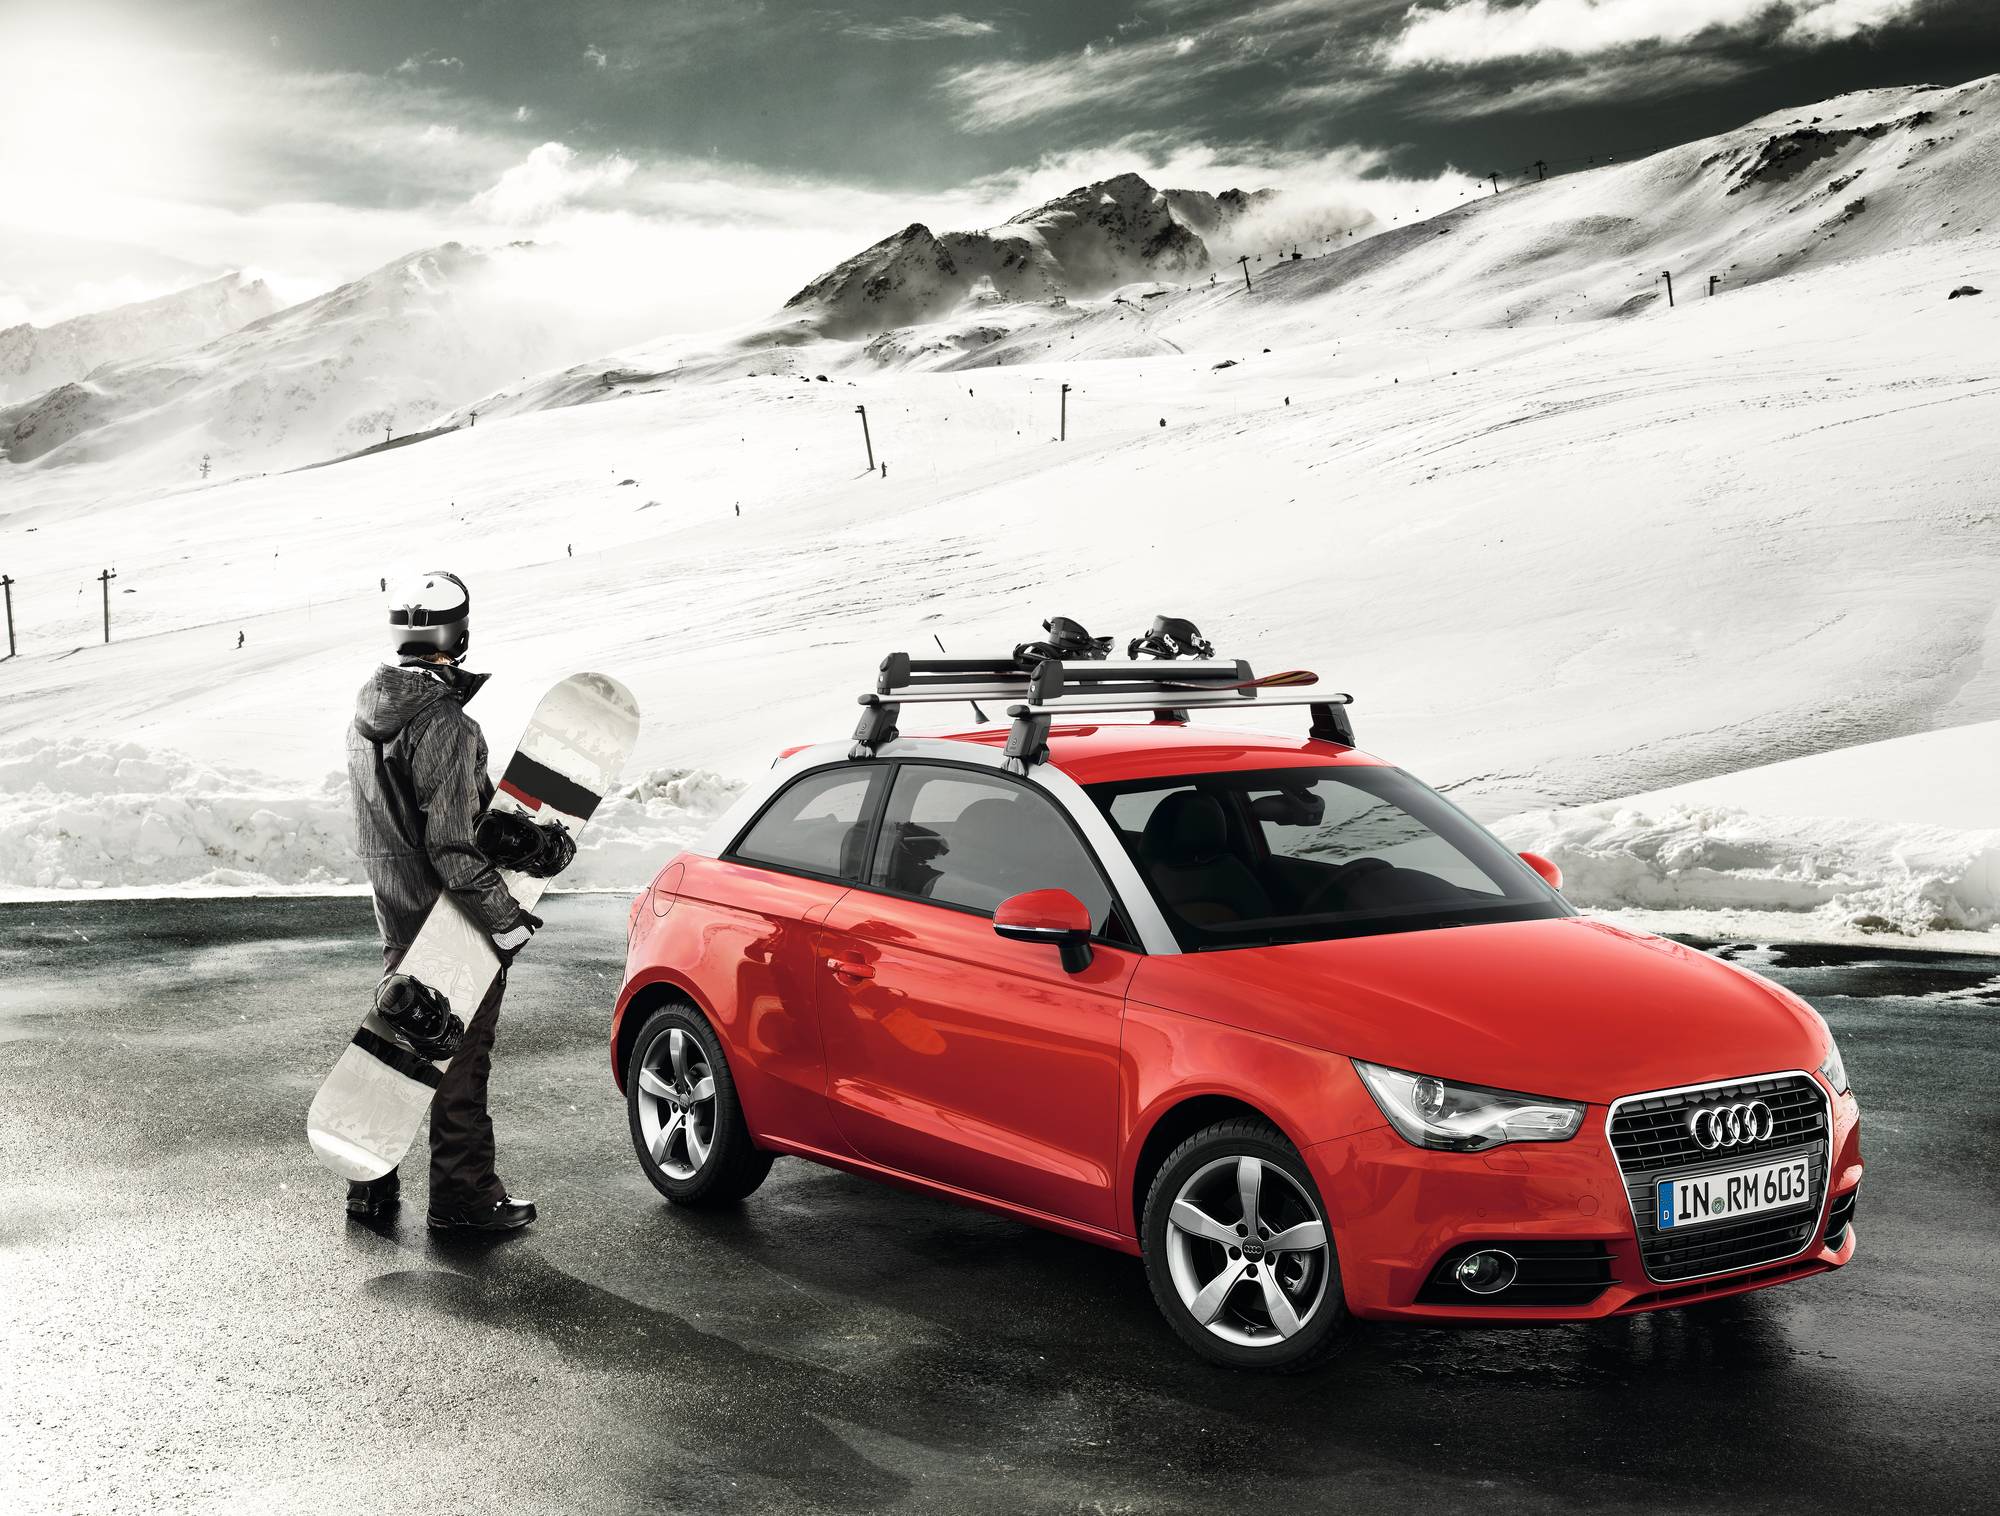 Accesorios Originales Audi invierno